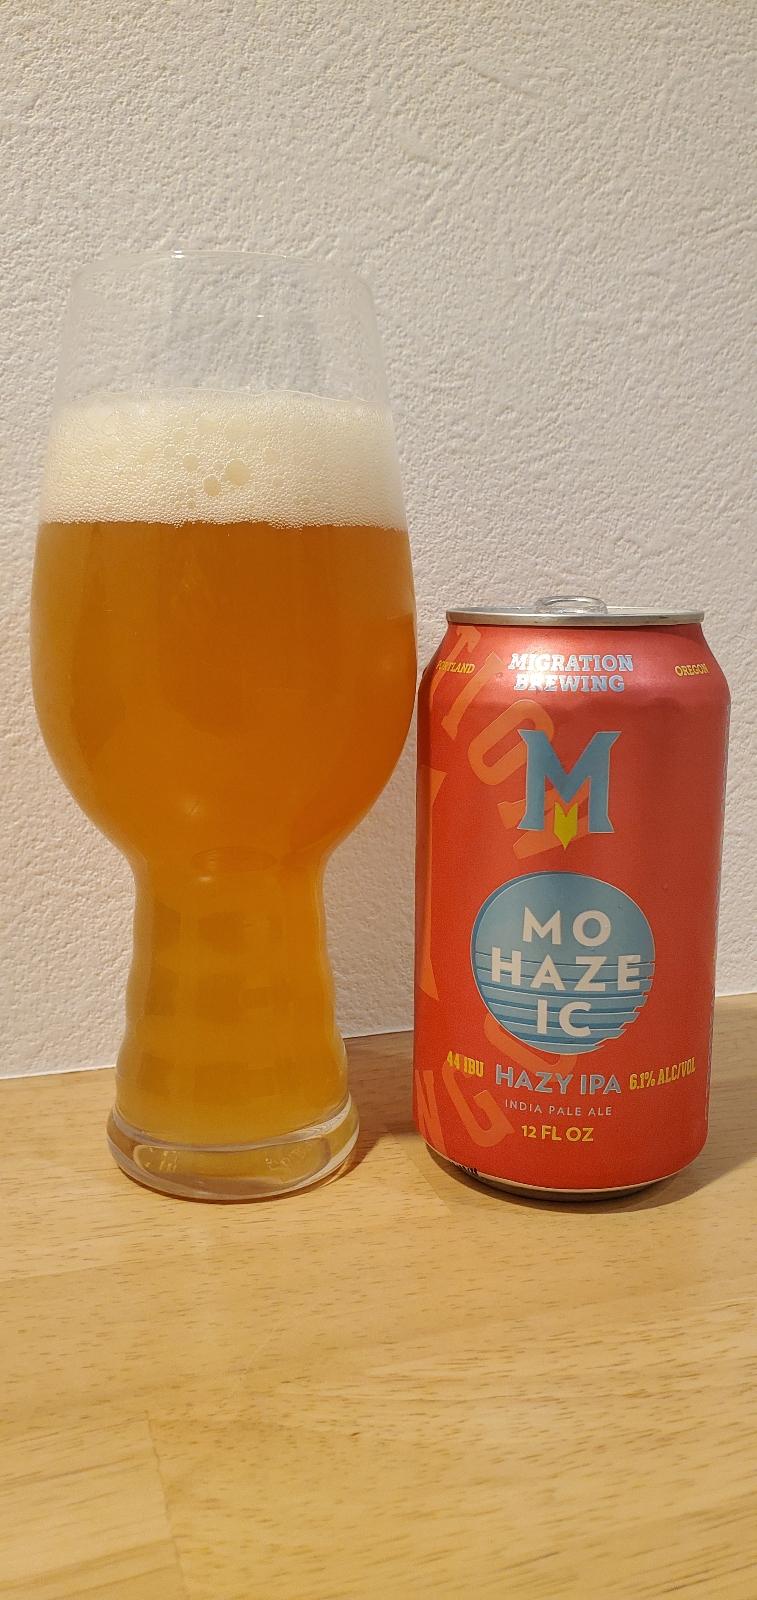 Mo-Haze-IC